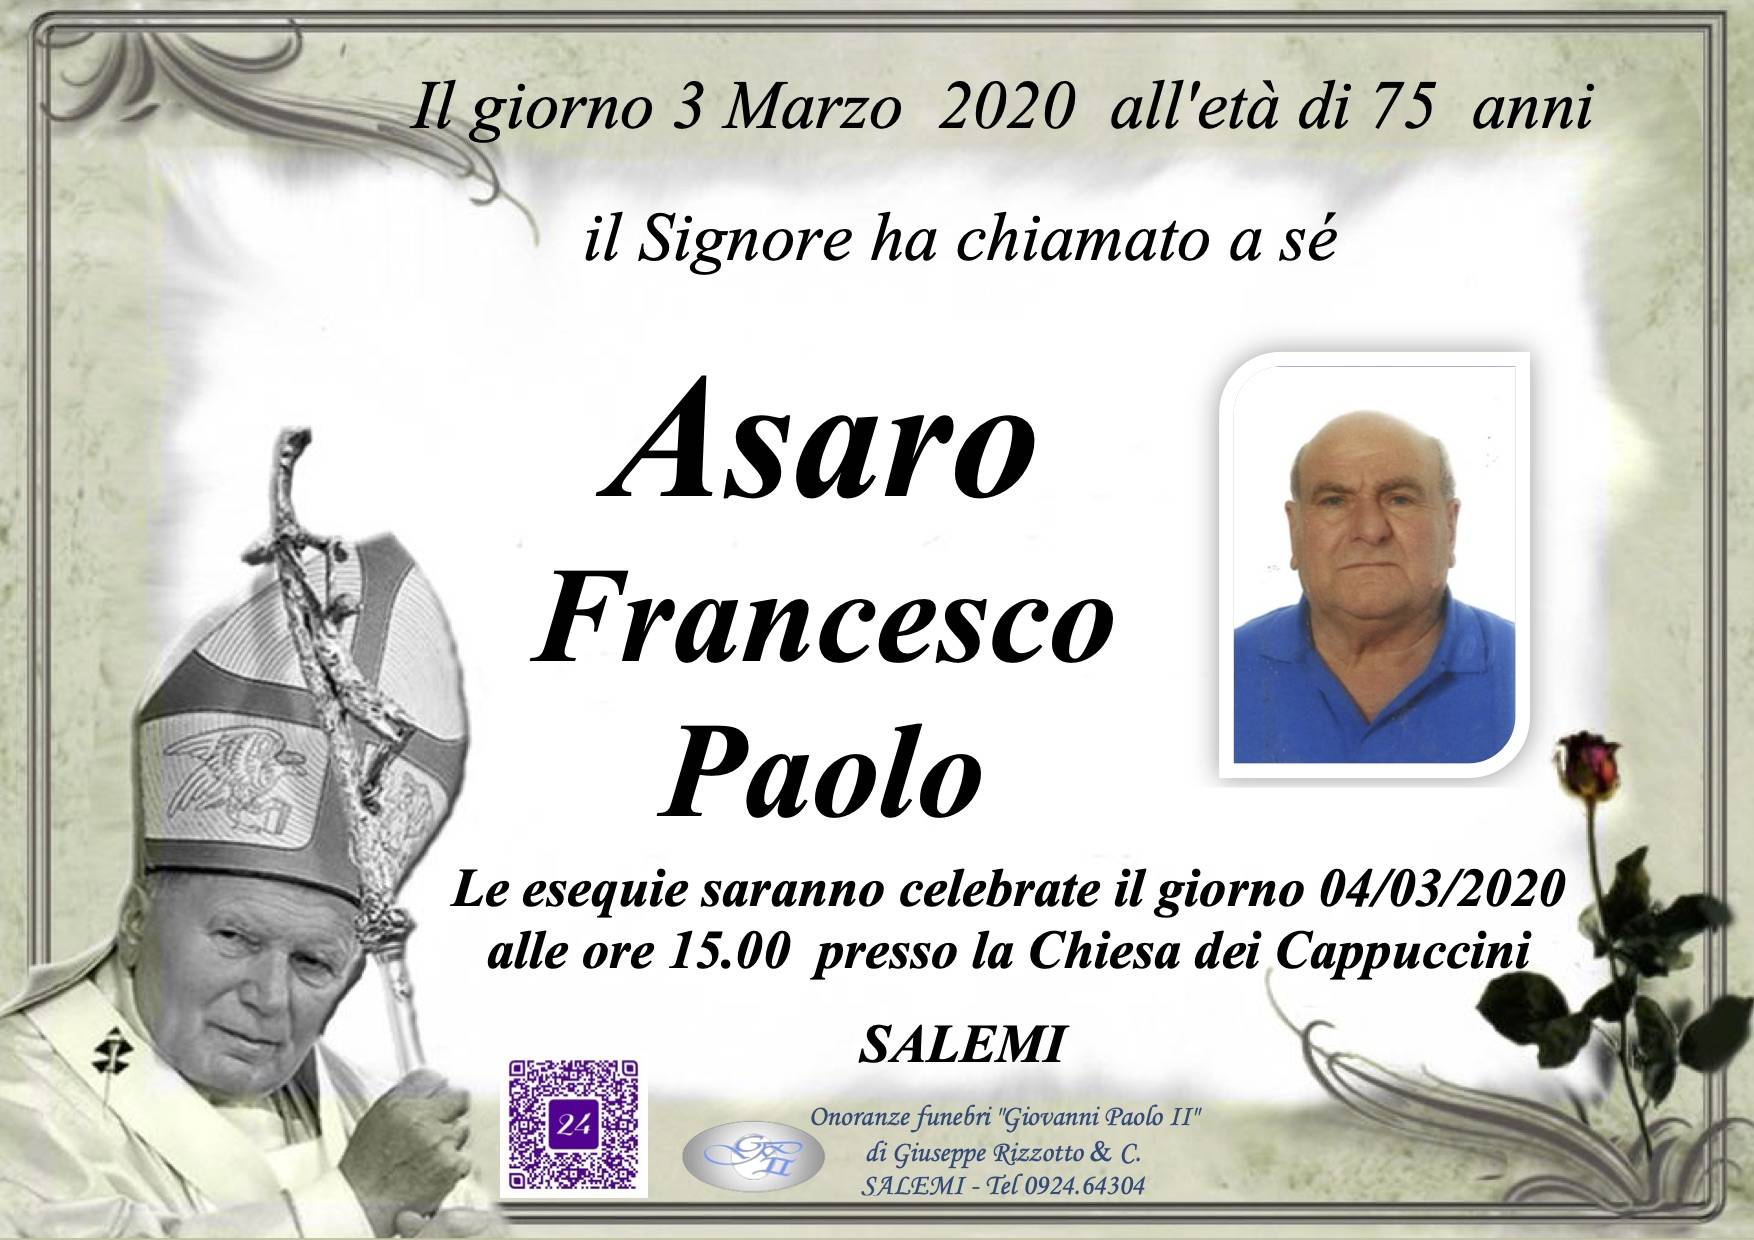 Francesco Paolo Asaro